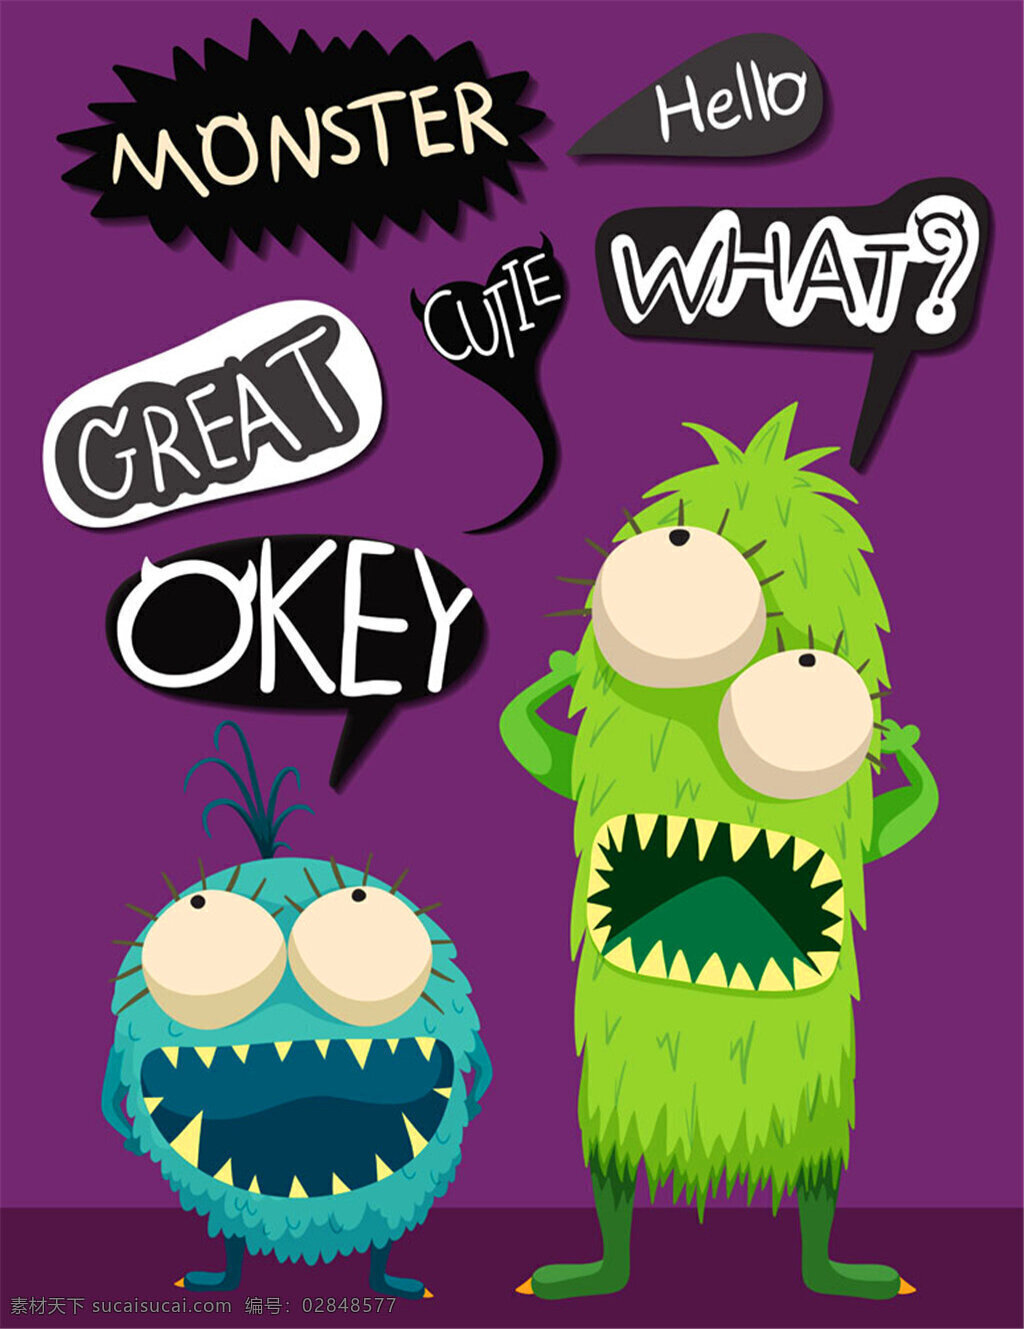 可怕 怪物 模板下载 绿色怪物 小恶魔 怪兽 外星人 卡通怪物 怪物插画 卡通形象 生活百科 矢量素材 对话框